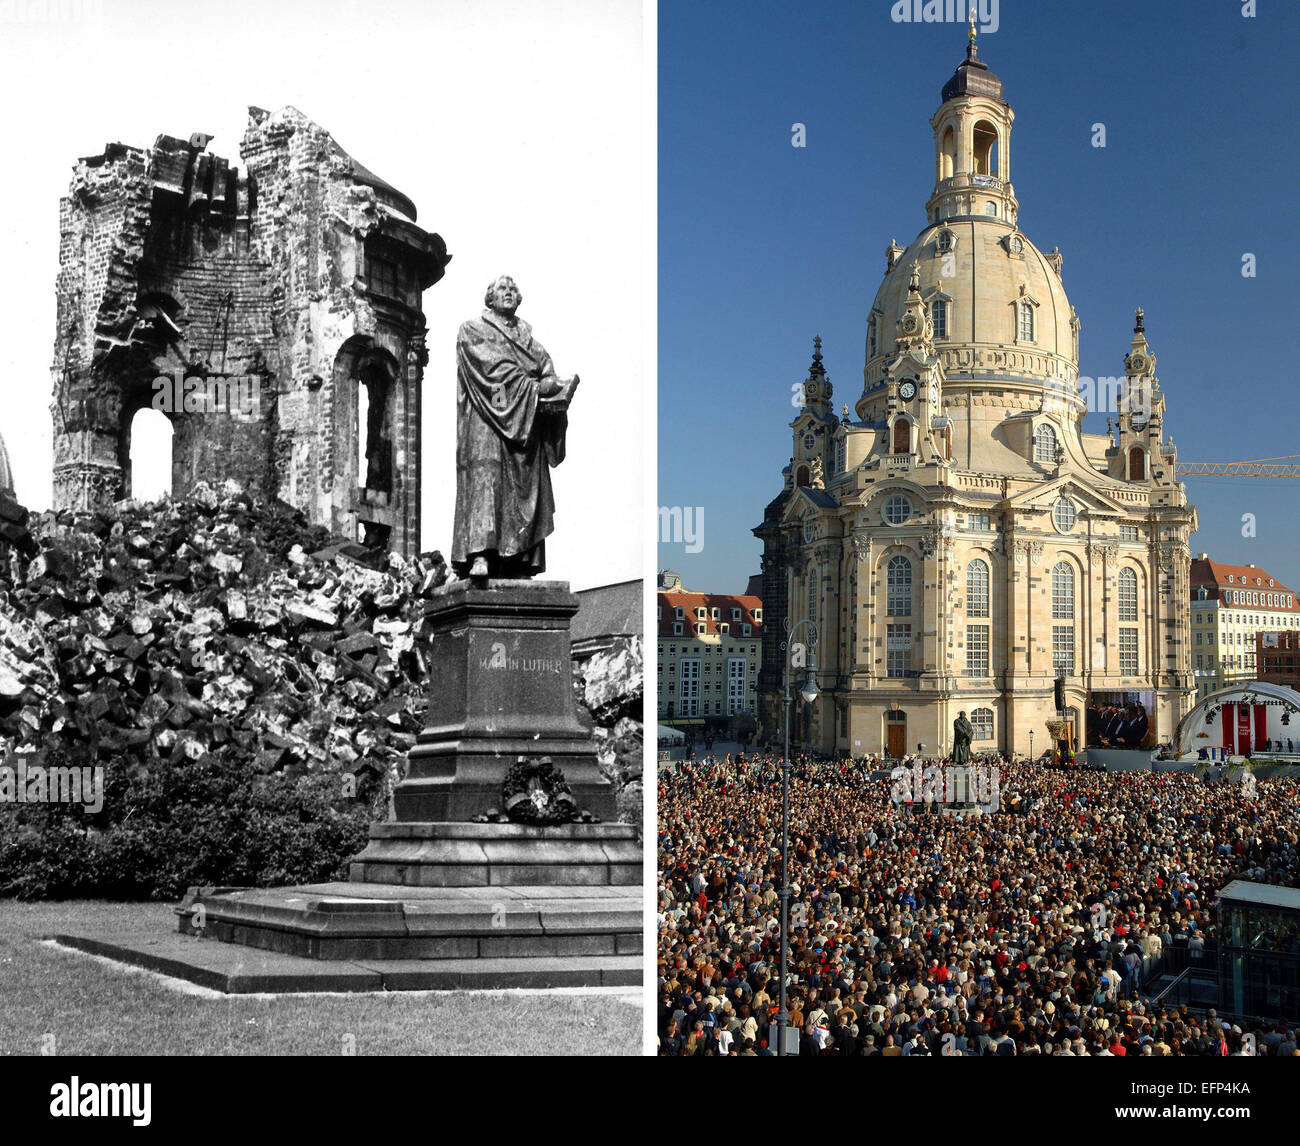 Разрушенная галерея. Дрезден Фрауэнкирхе 1945. Дрезден Церковь Фрауэнкирхе руины. Фрауэнкирхе Дрезден после войны. Фрауэнкирхе Дрезден разрушенная.